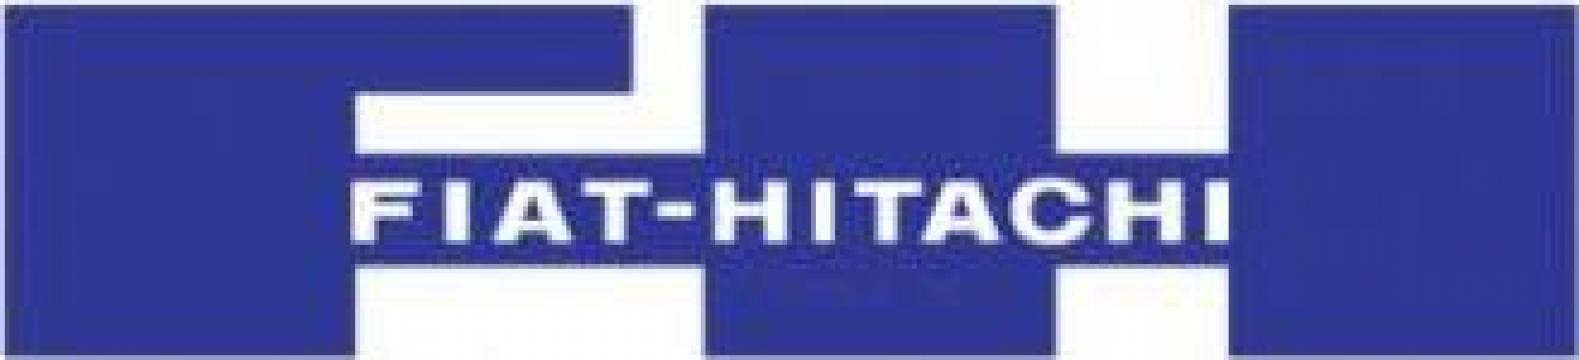 Piese schimb Fiat Hitachi / Fiat Kobelco de la STP Parts And Service Srl